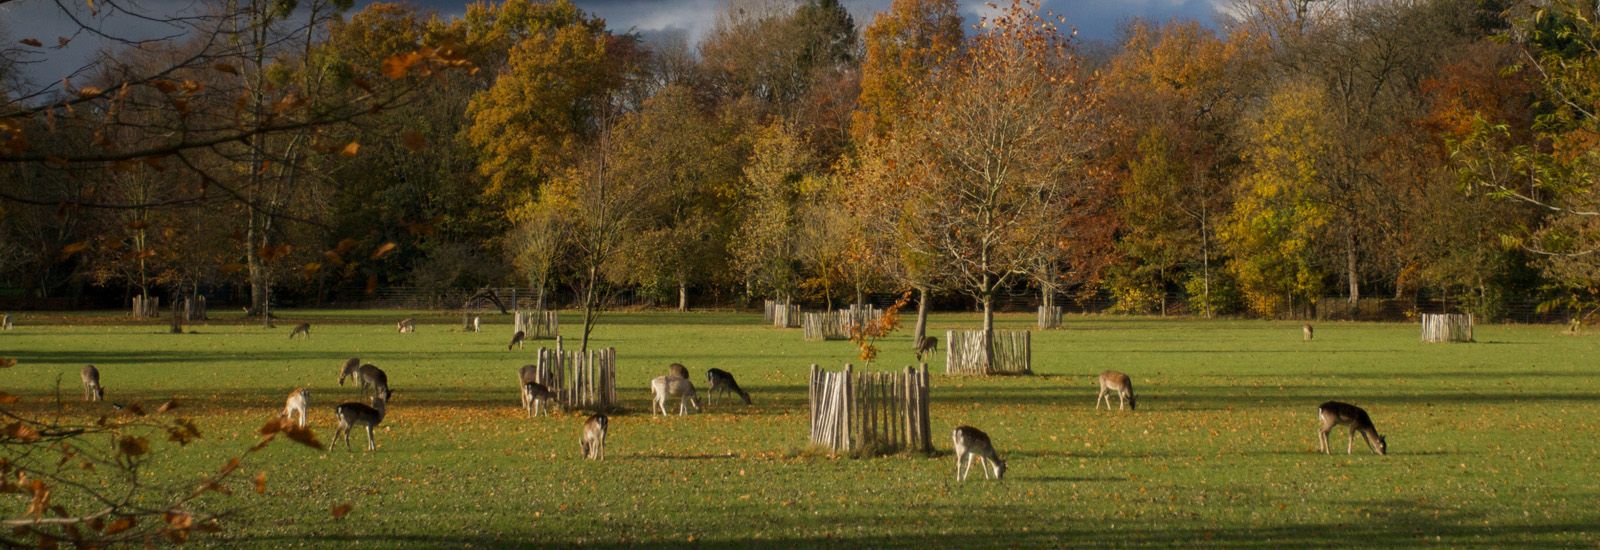 Magdalen College deer park